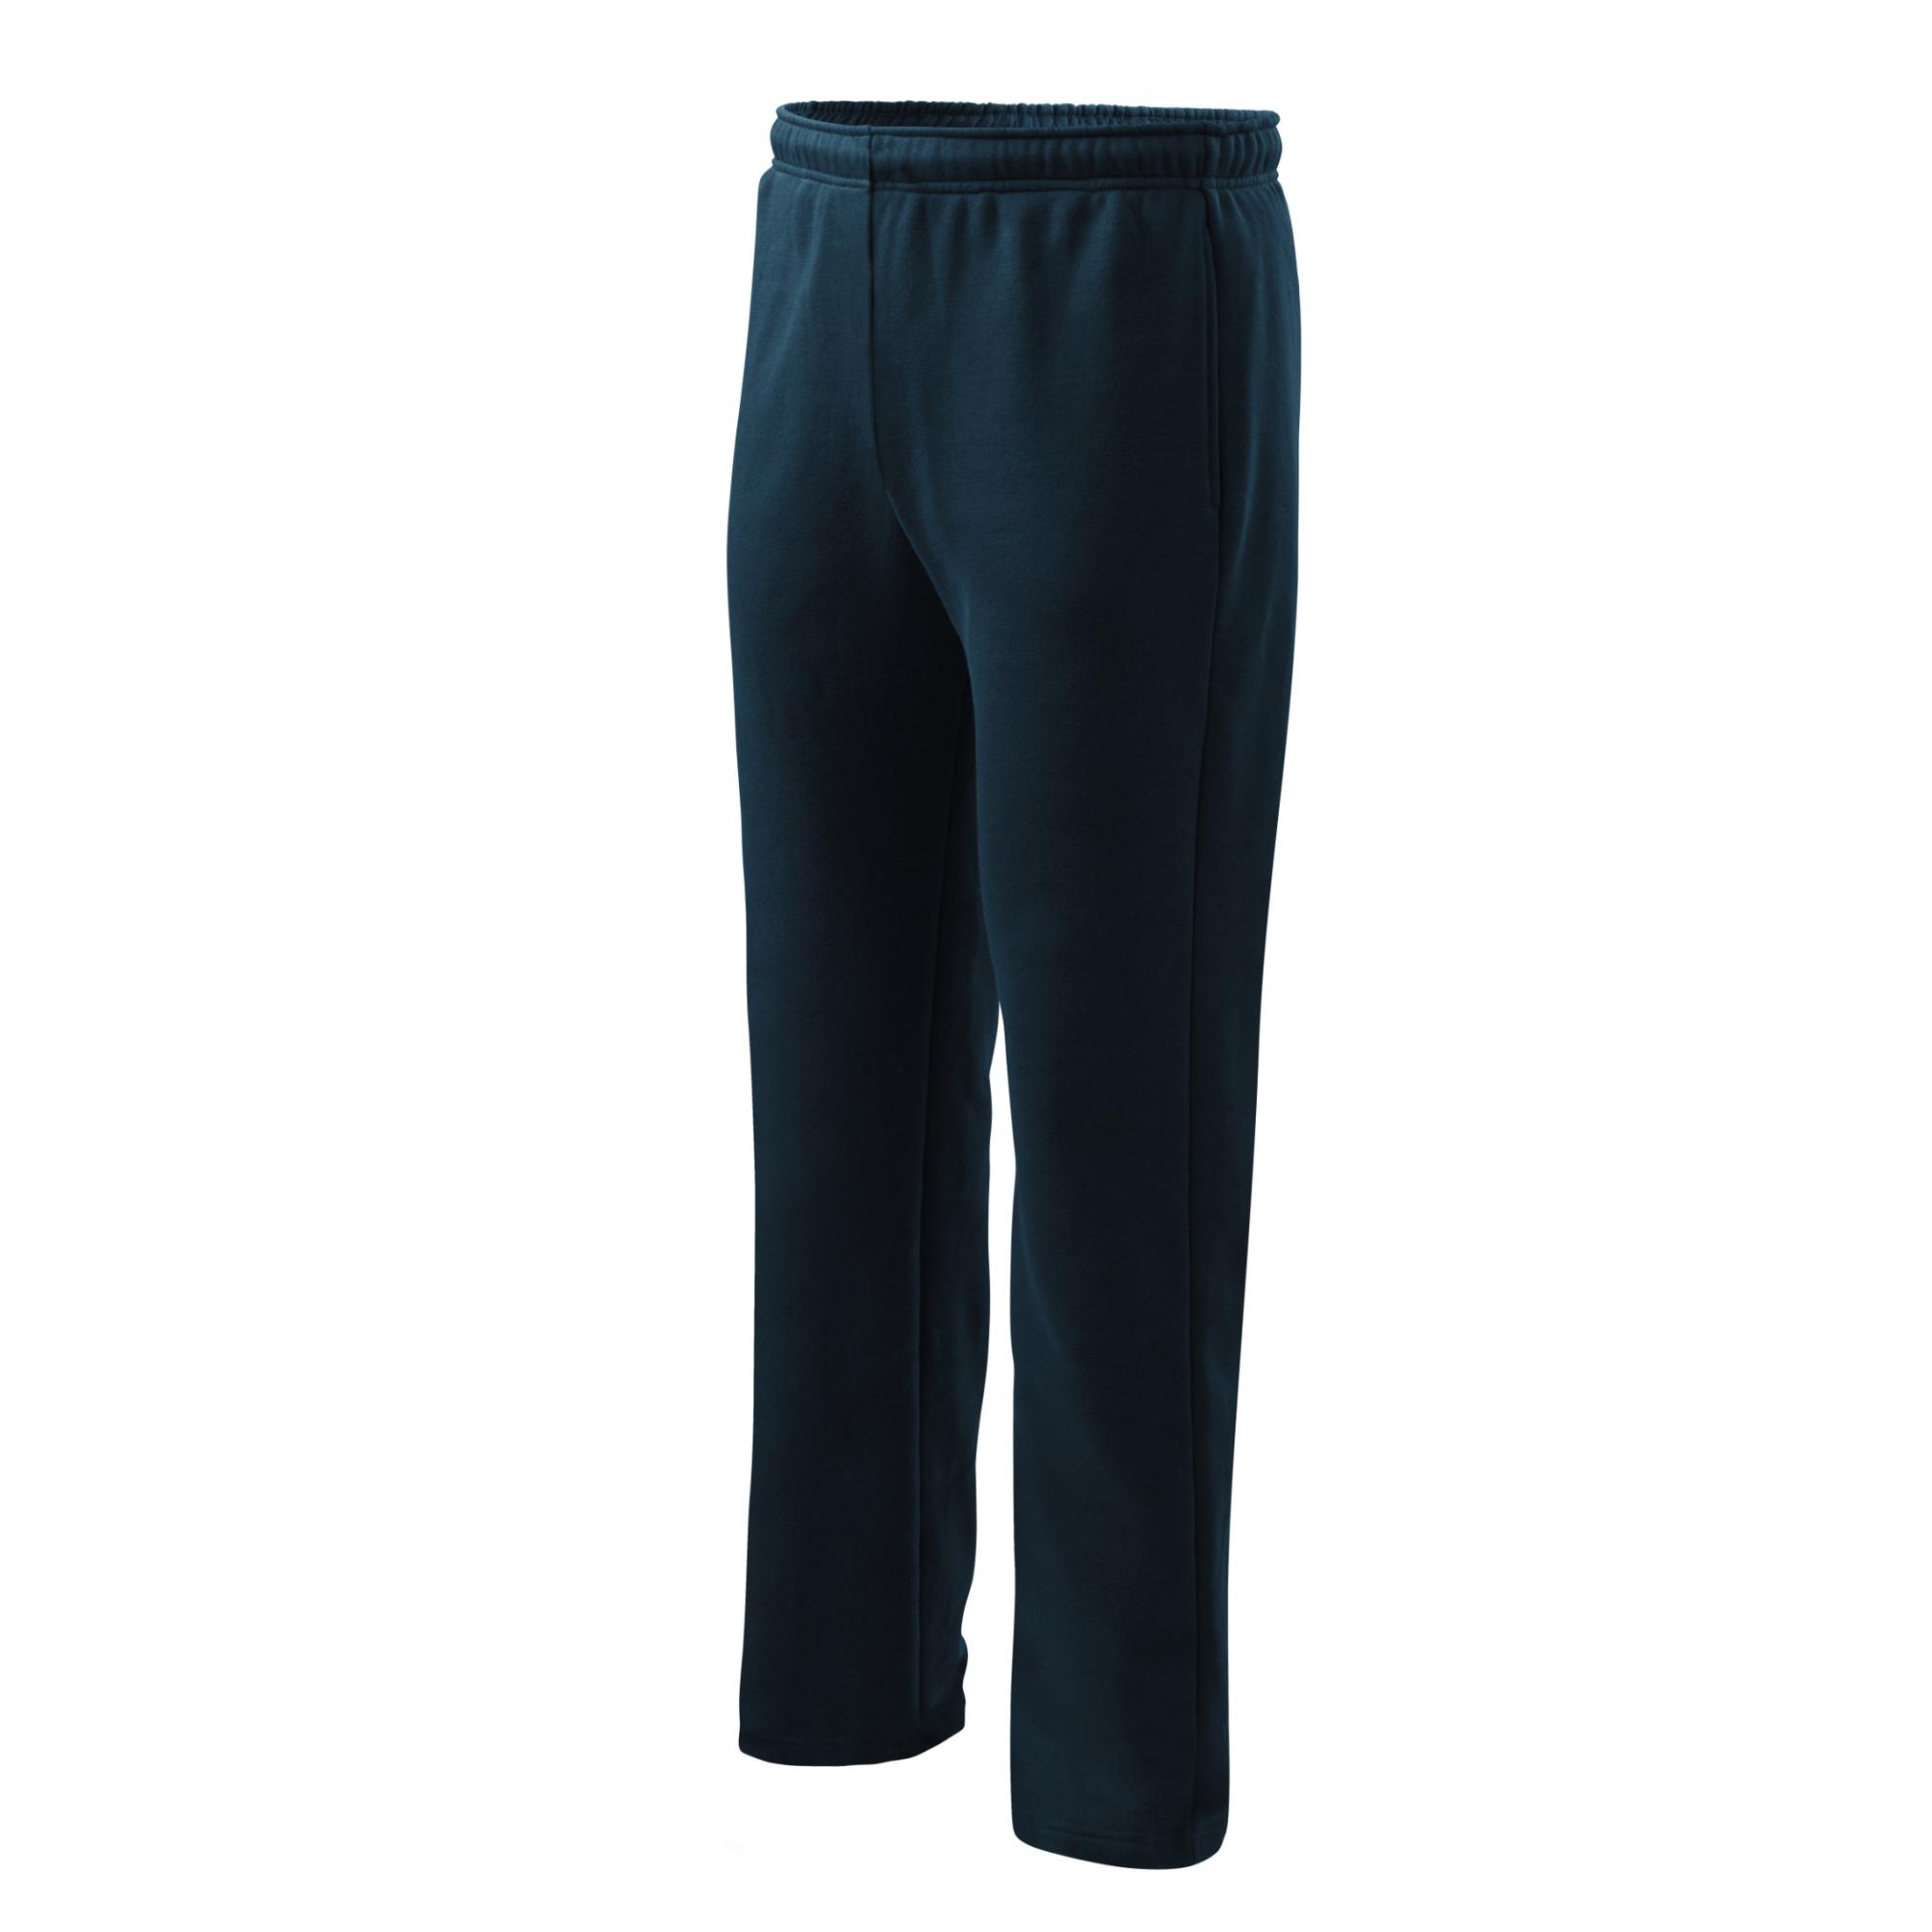 Pantaloni pentru bărbaţi/copii Comfort 607 Albastru marin